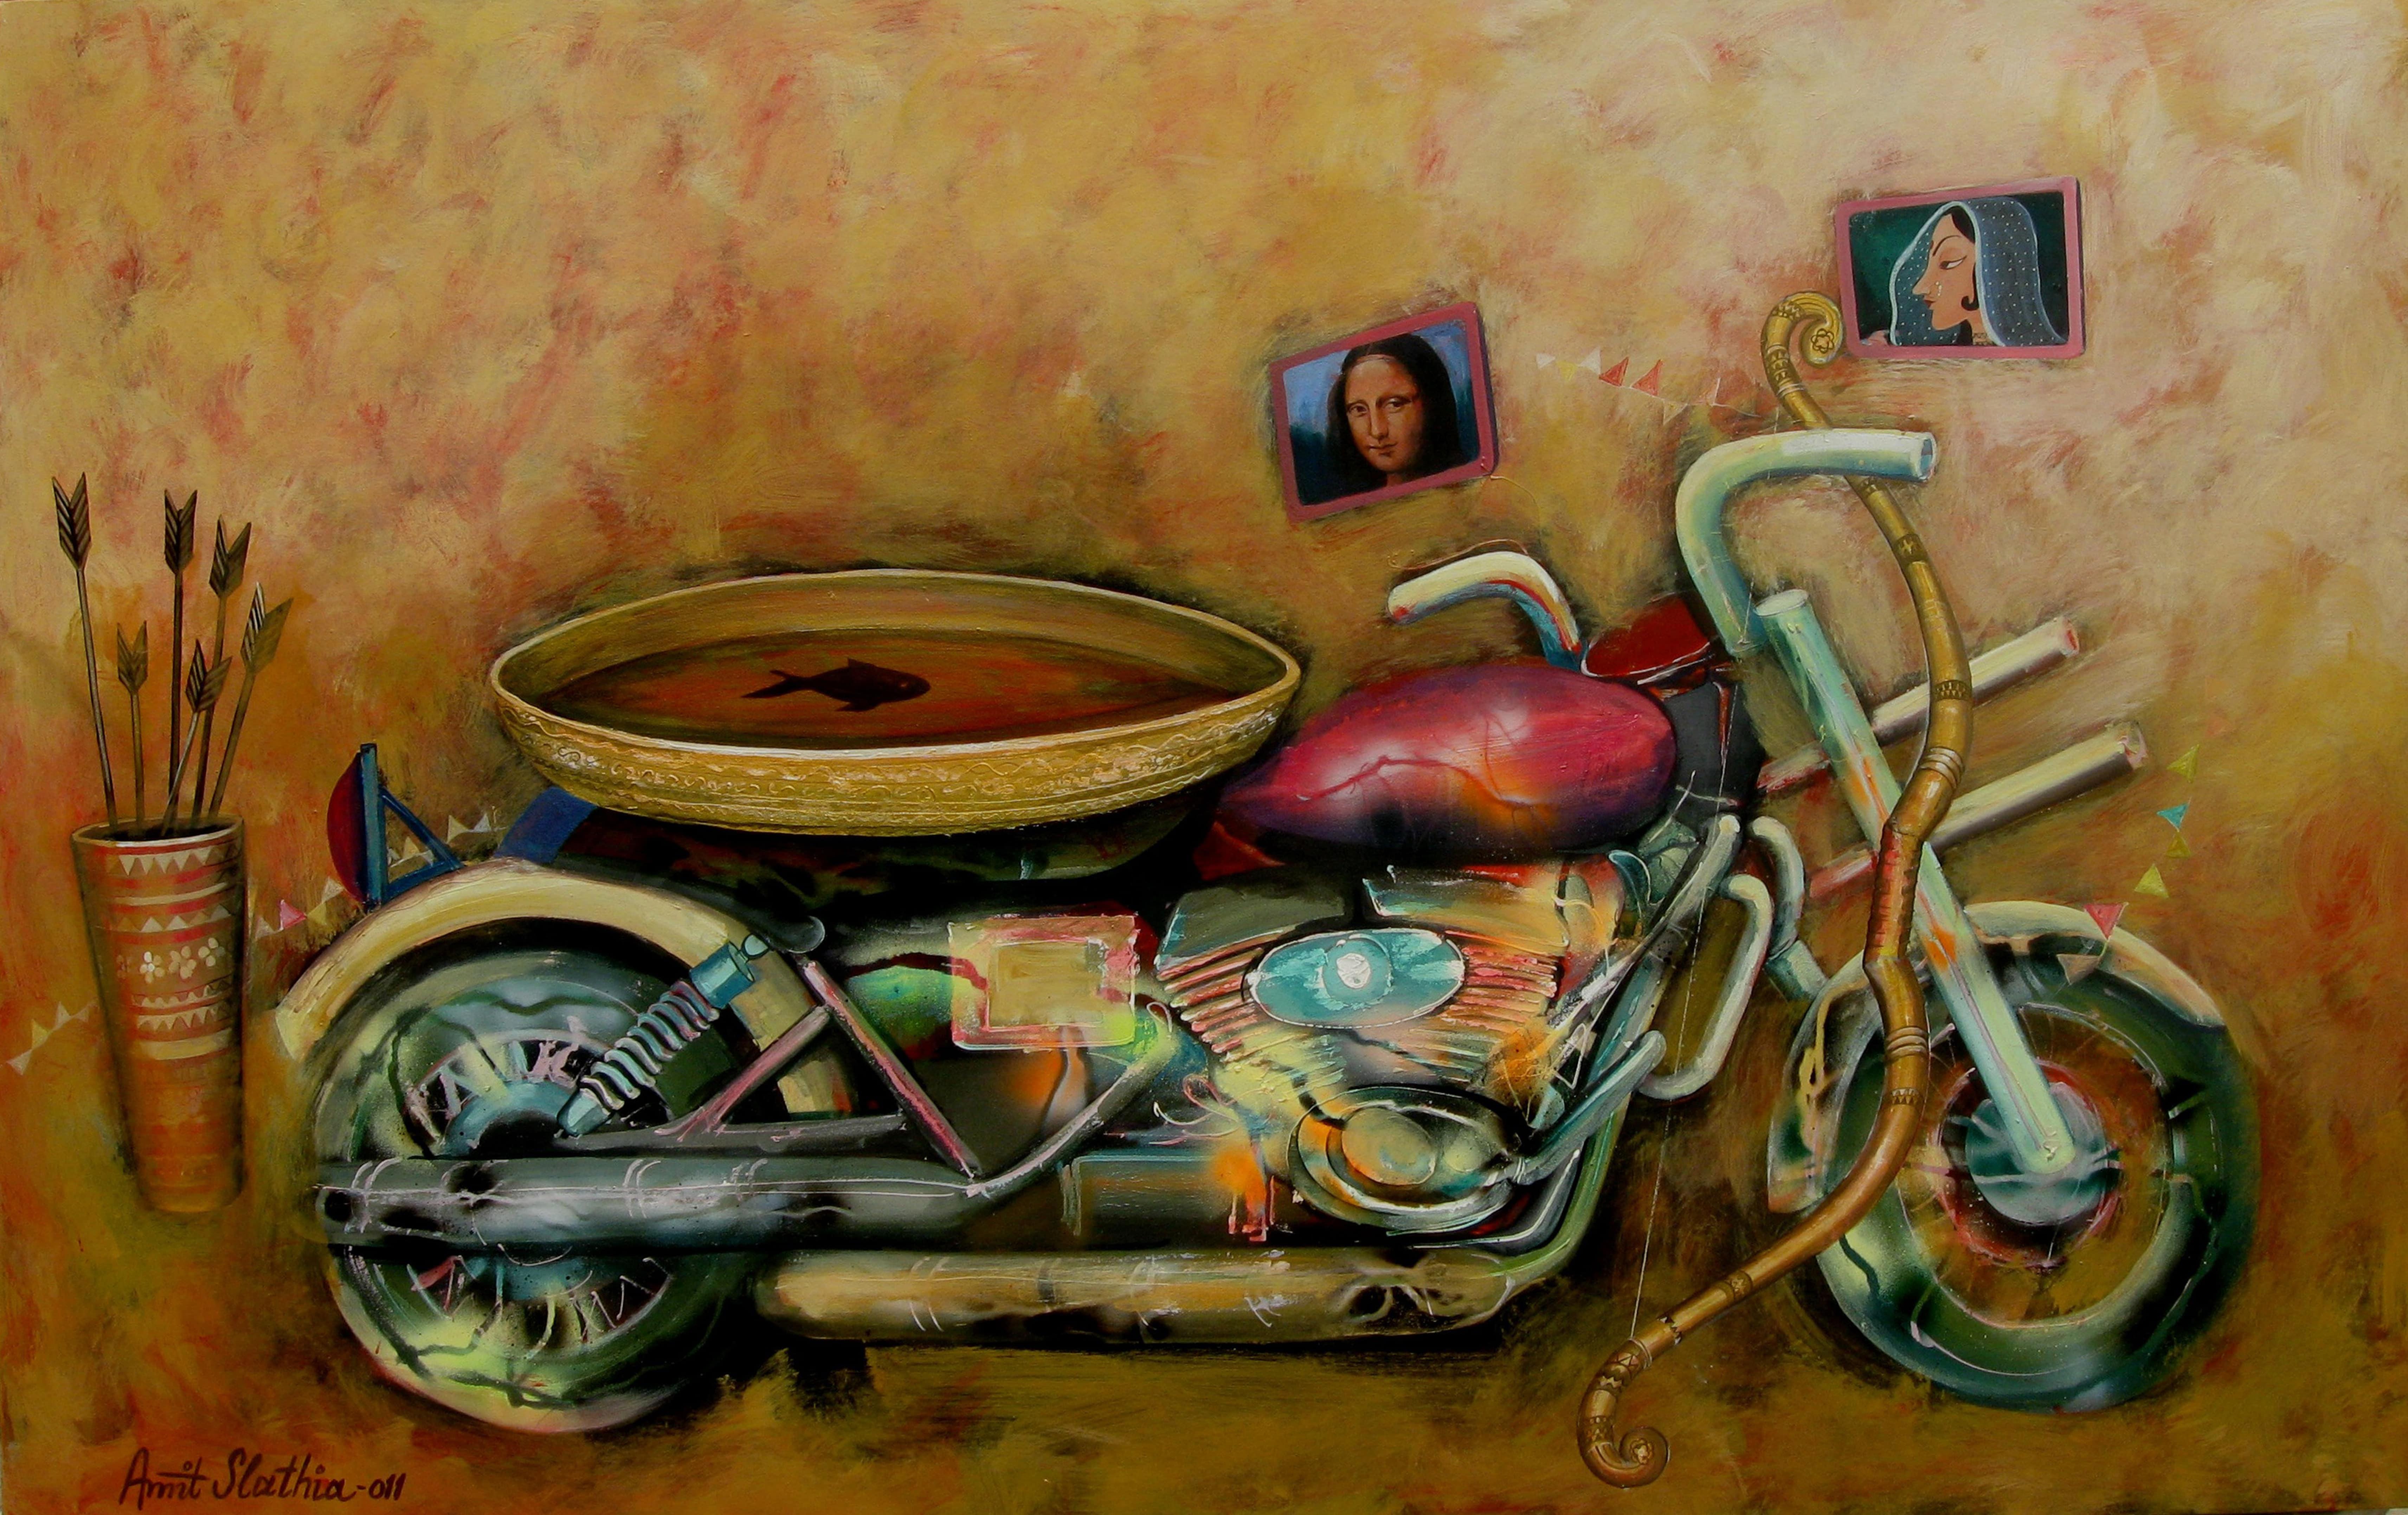 Prajna-(Wisdom) - Painting by Amit Singh Slathia